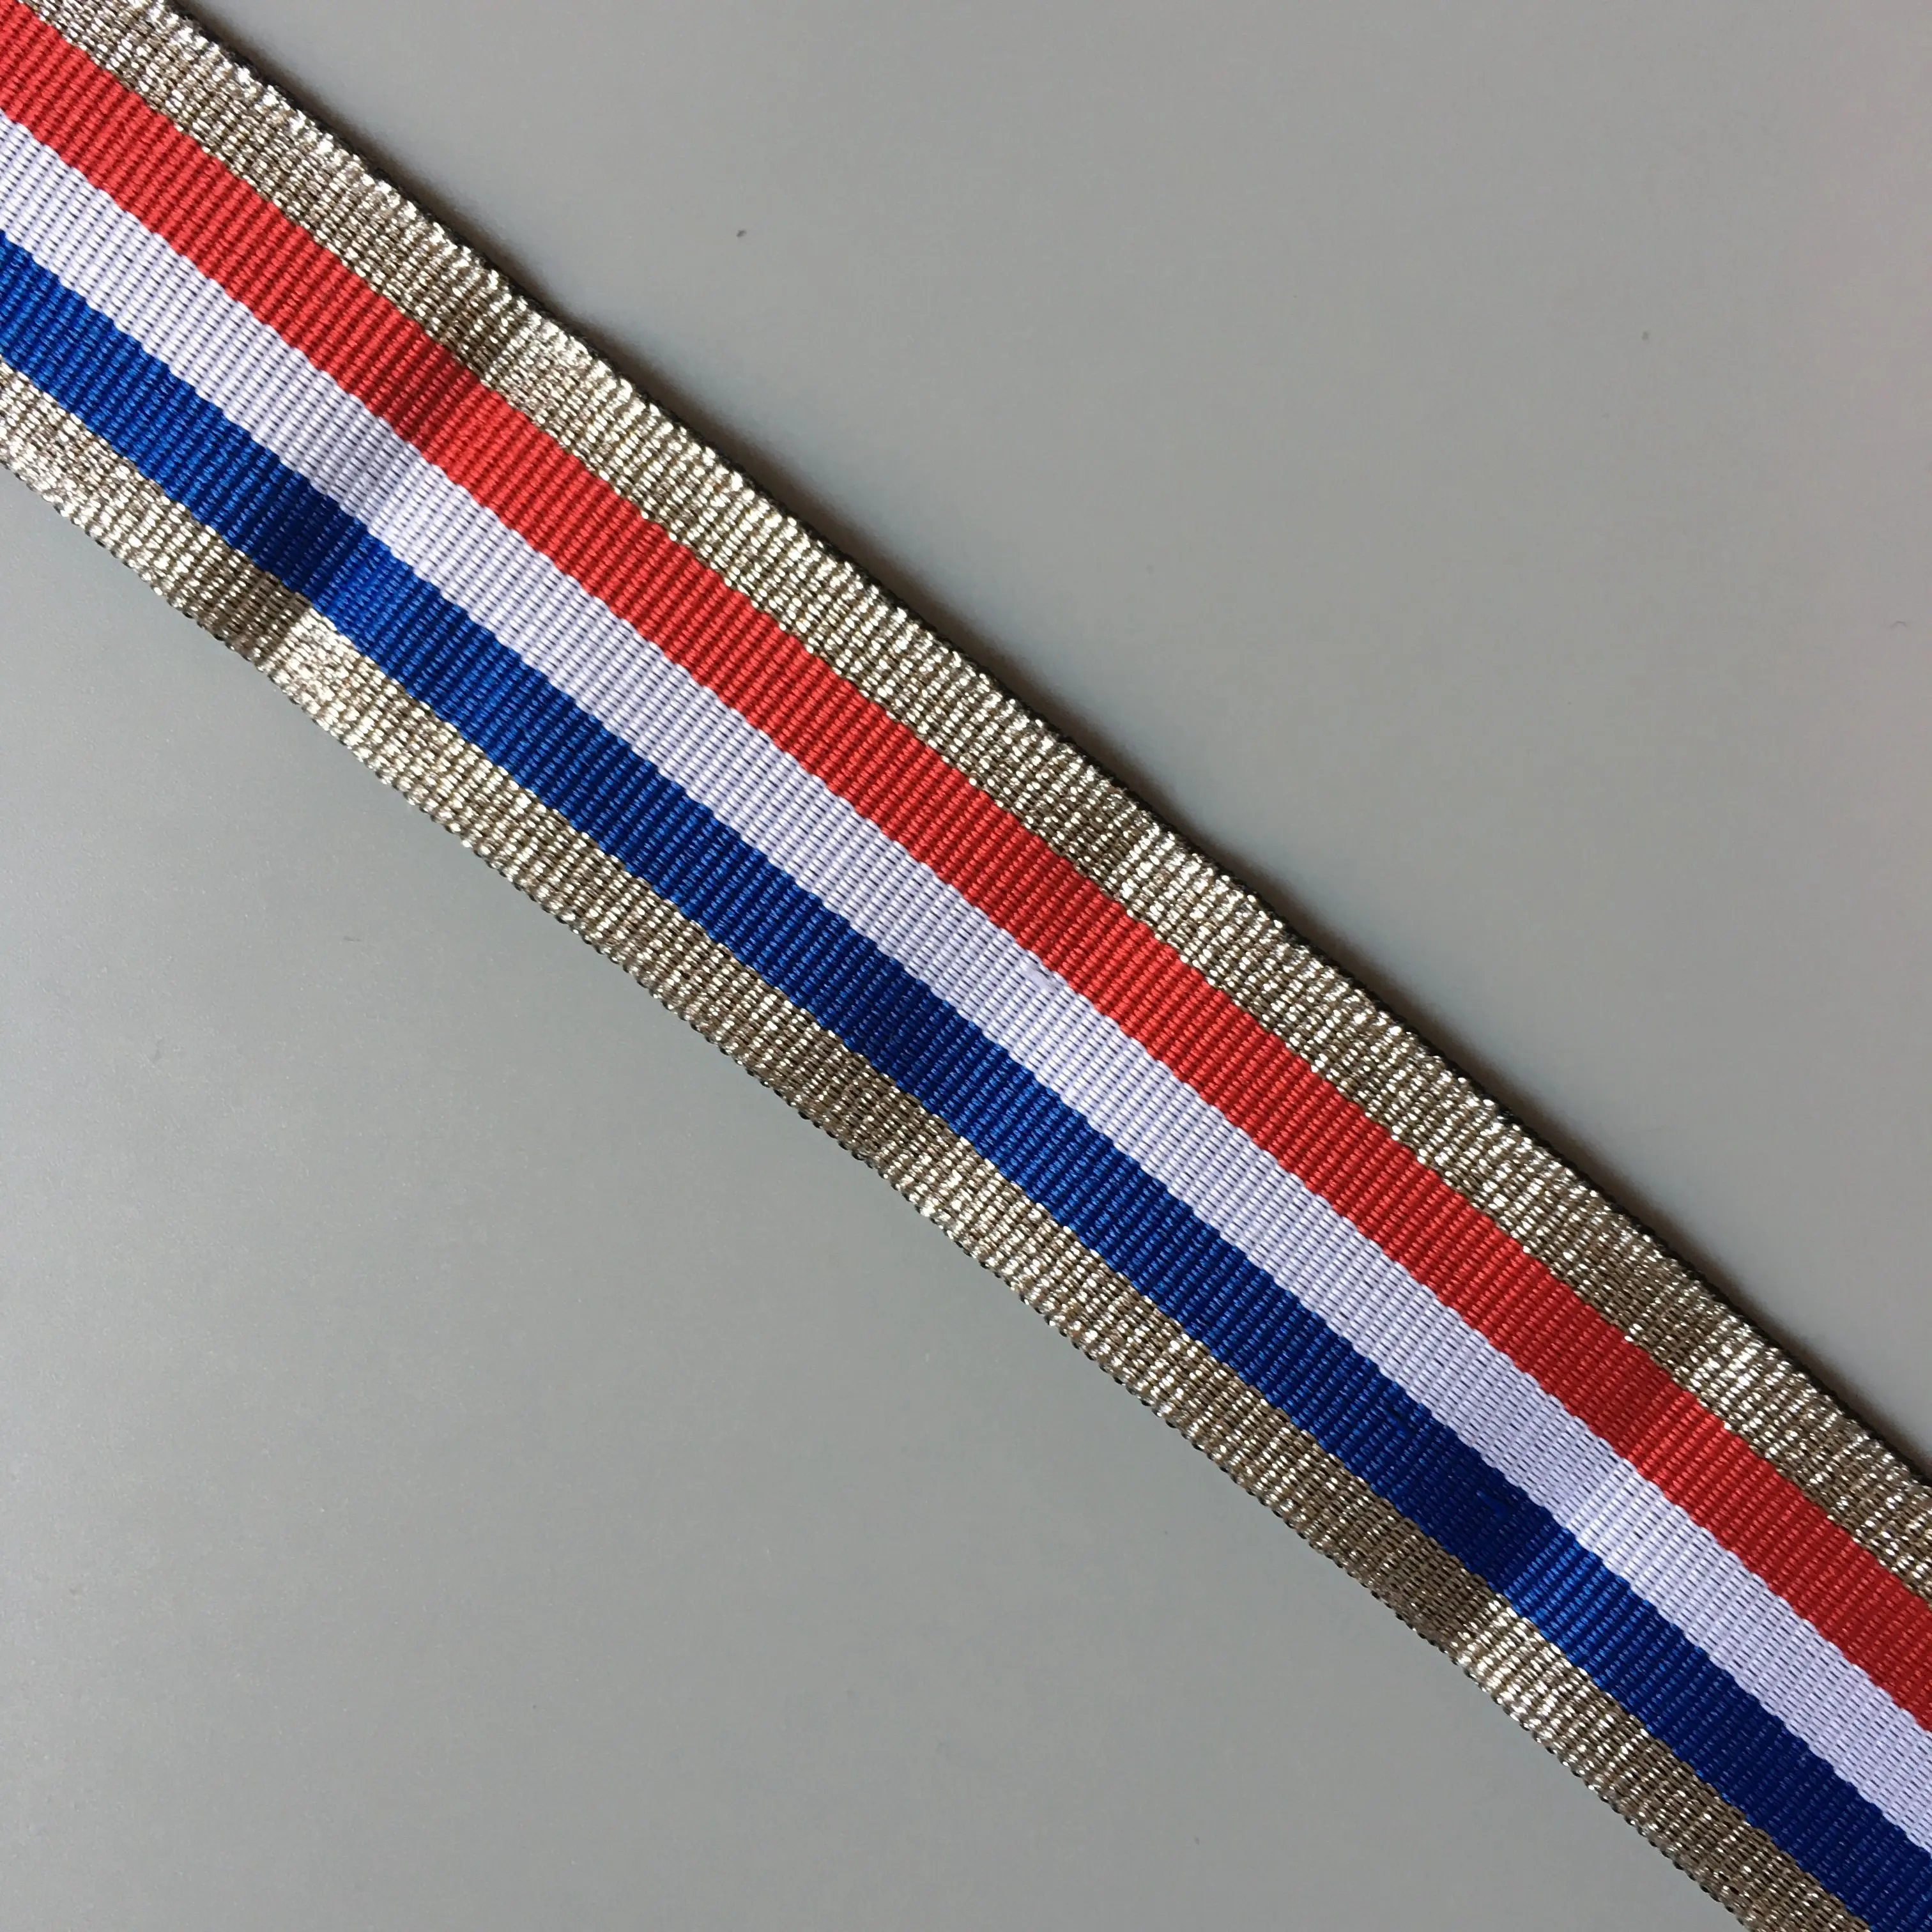 العلم الفرنسي الشريط المعدني مع خطوط من الفضة الأبيض الأزرق الأحمر